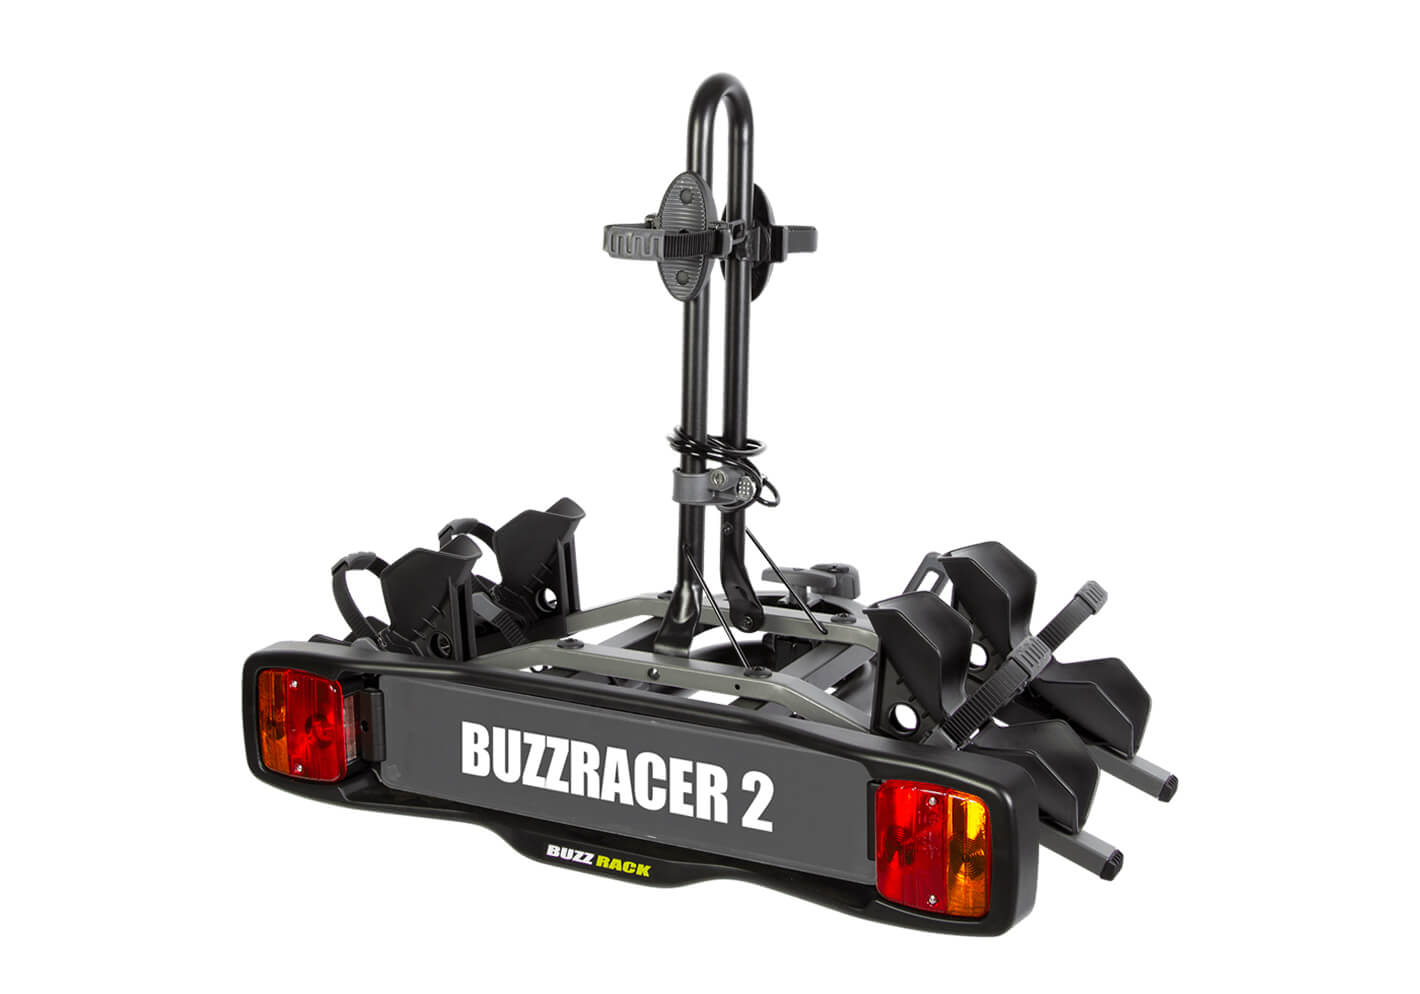 BUZZ RACK:BUZZ RACK BuzzRacer 2 bike wheel support rack no. BRP332